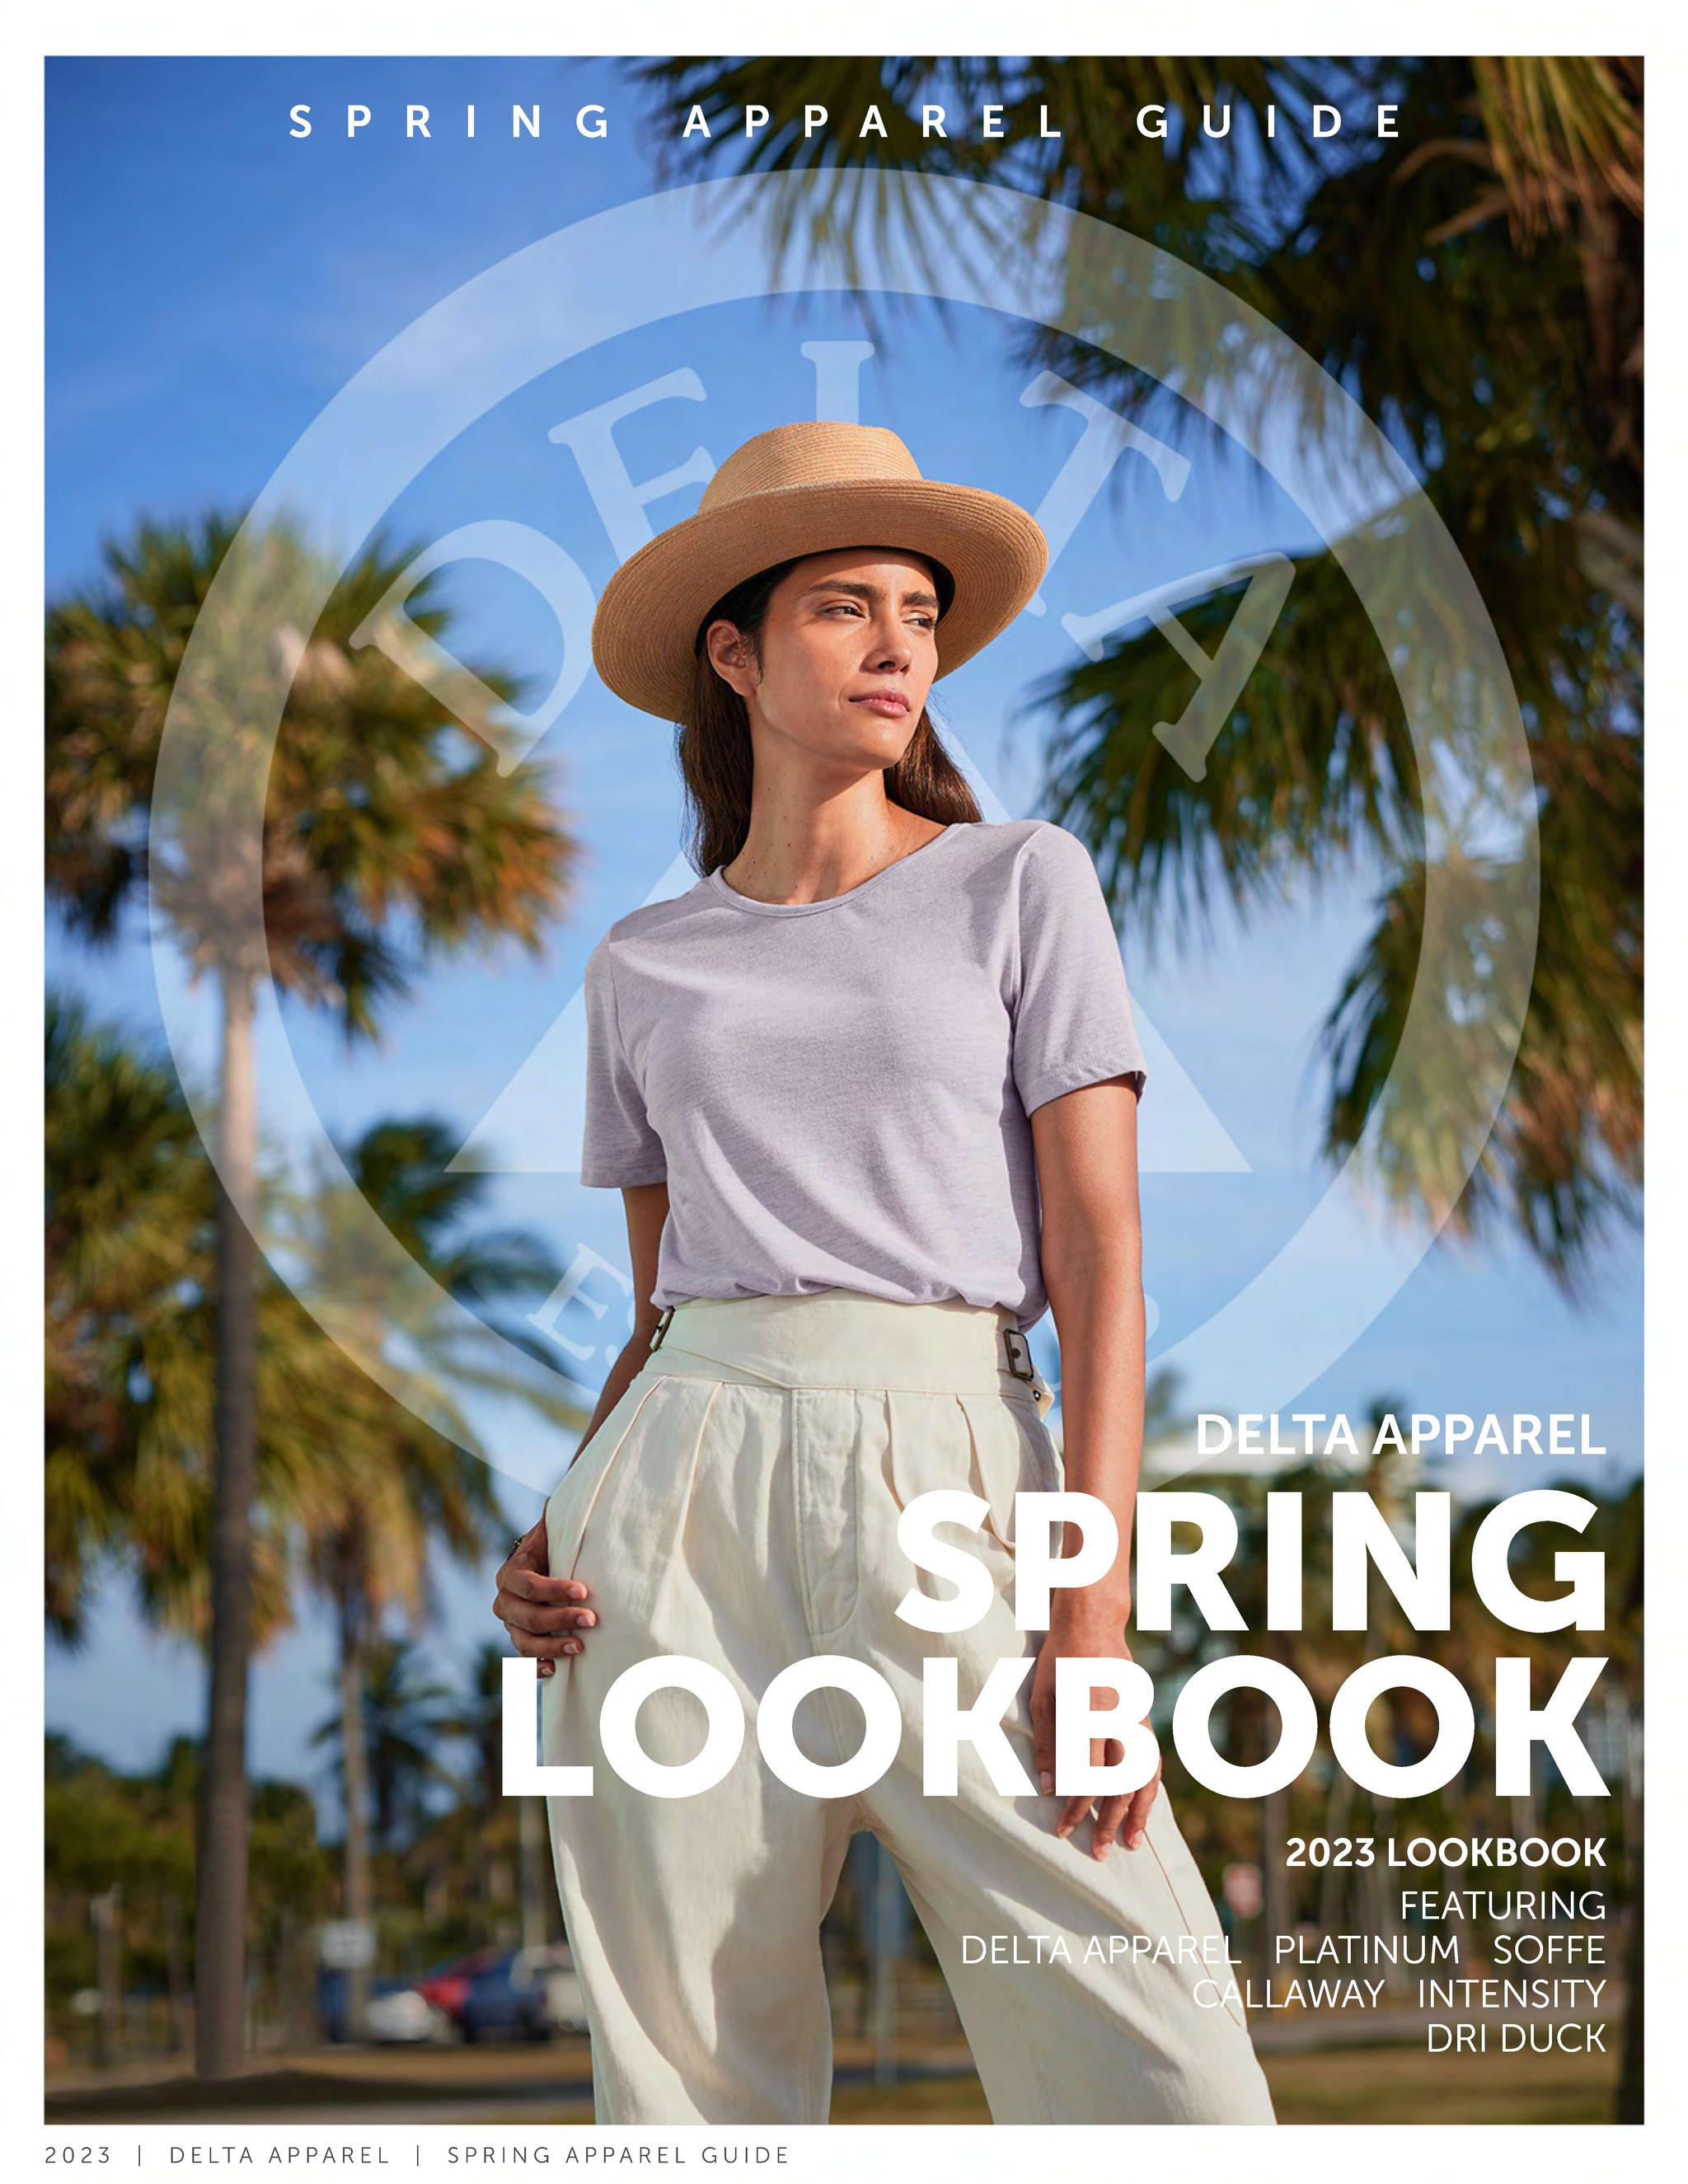 Spring Lookbook Guide